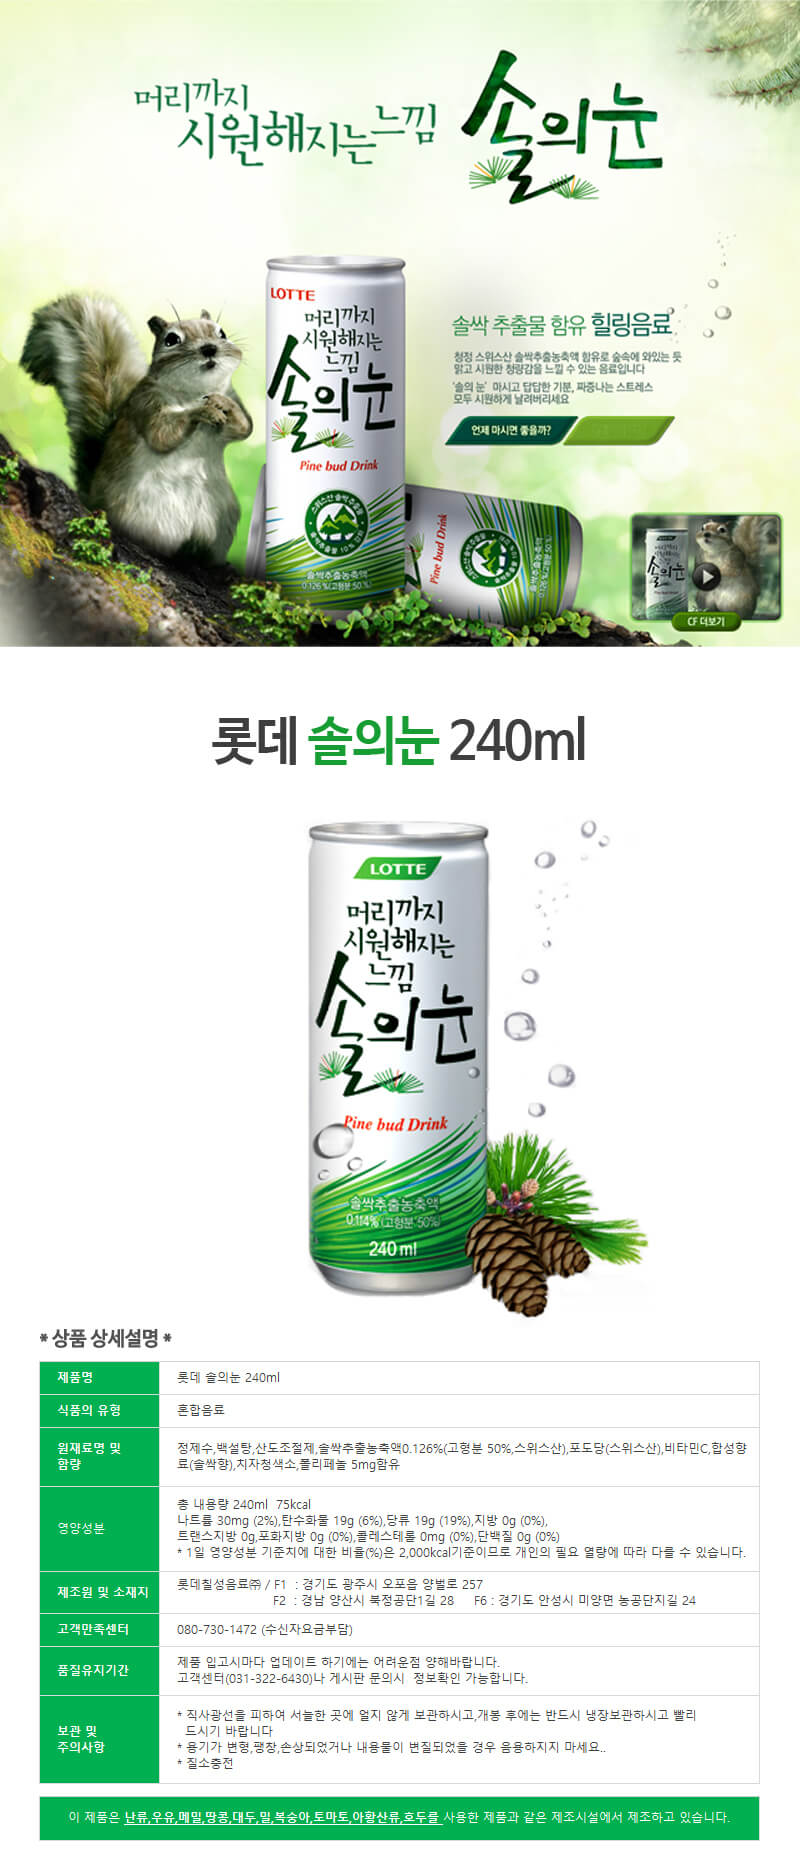 韓國食品-松芽飲料 240ml